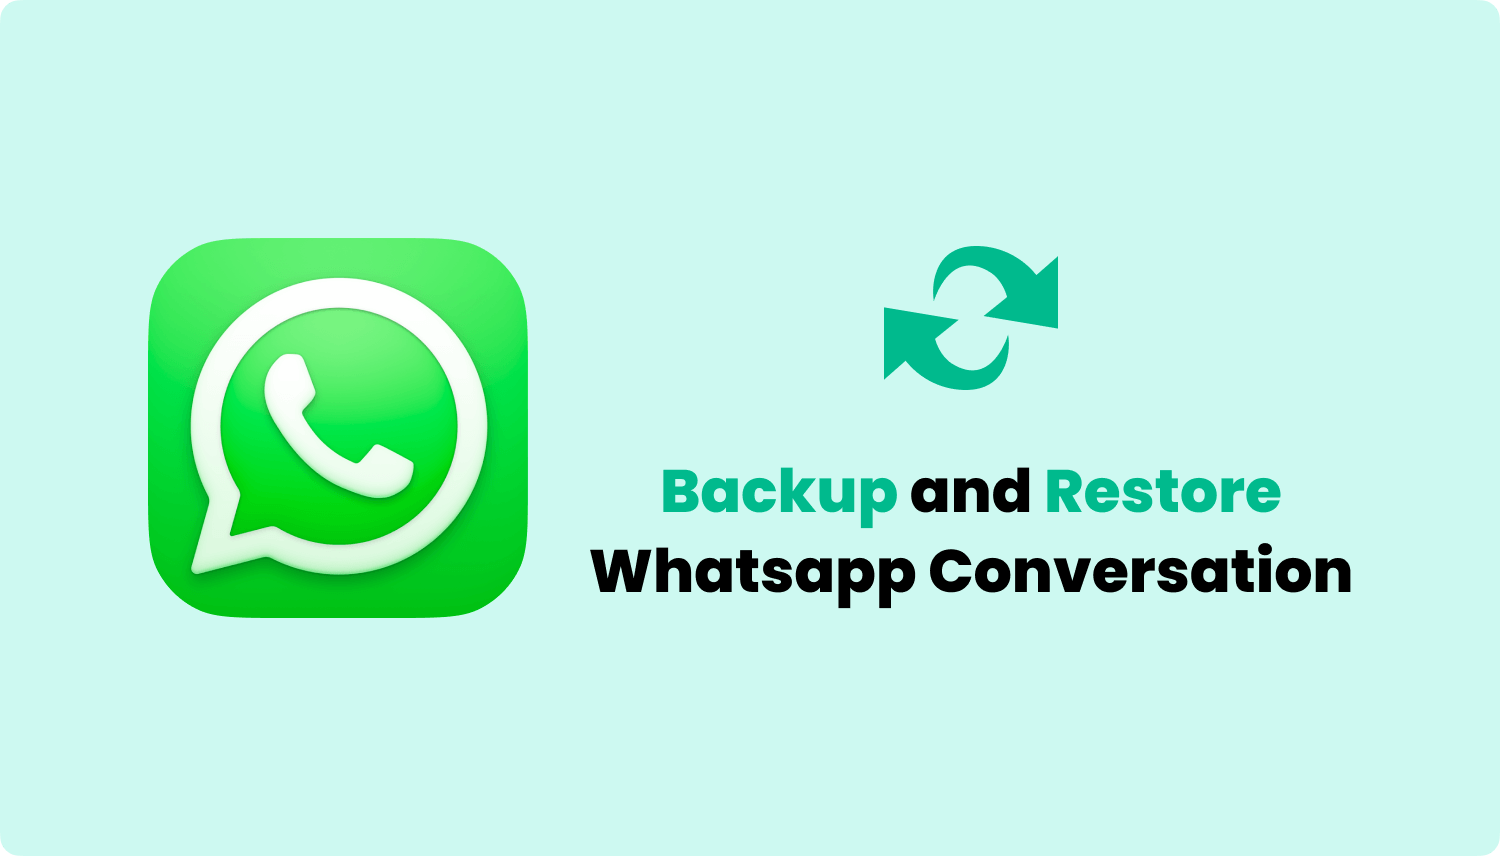 Copia de seguridad y recuperación de las conversaciones de Whatsapp